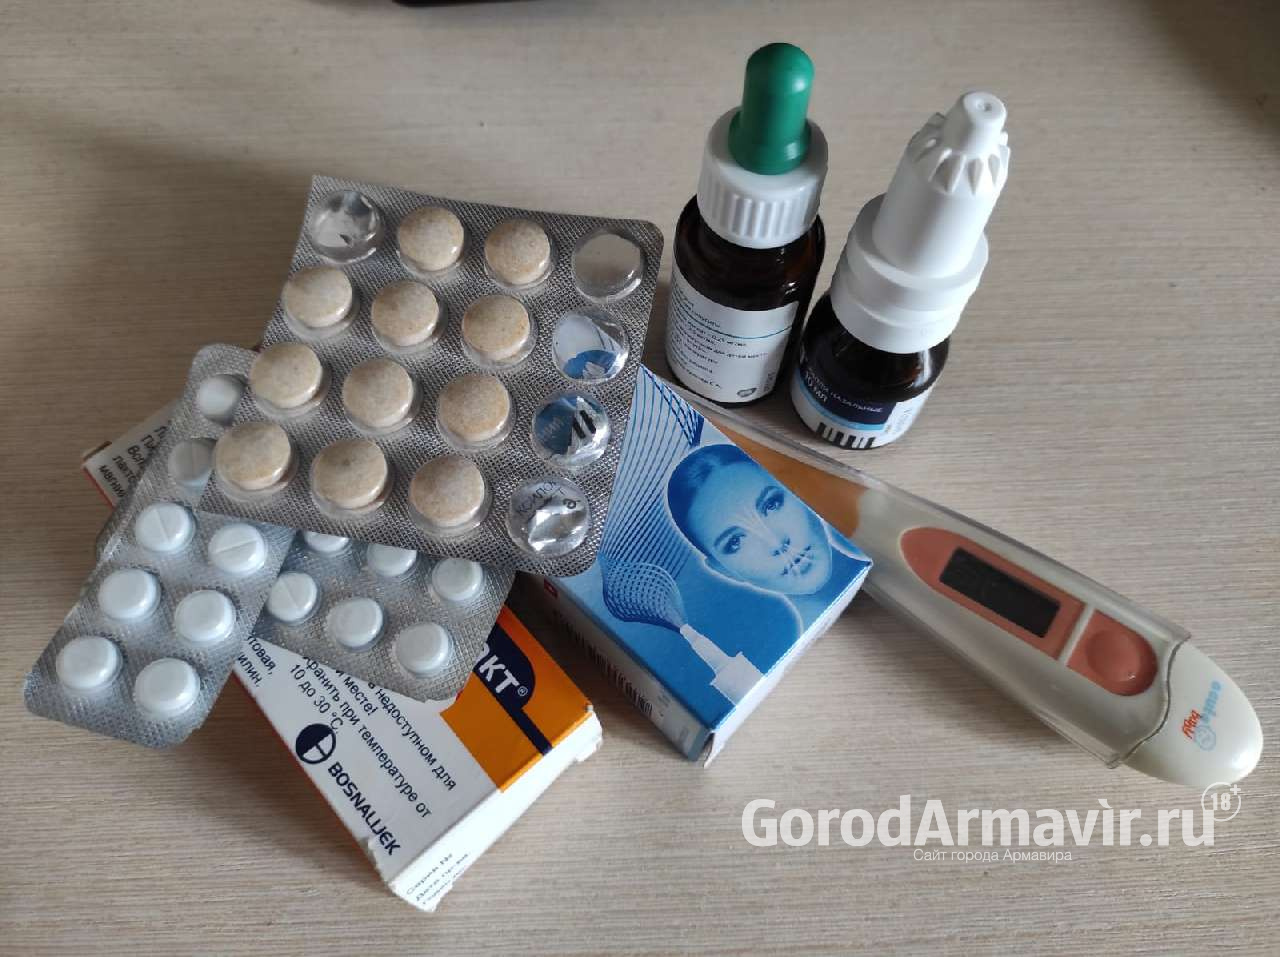 В Армавире 27 декабря не выявлено новых случаев заболевания COVID-19